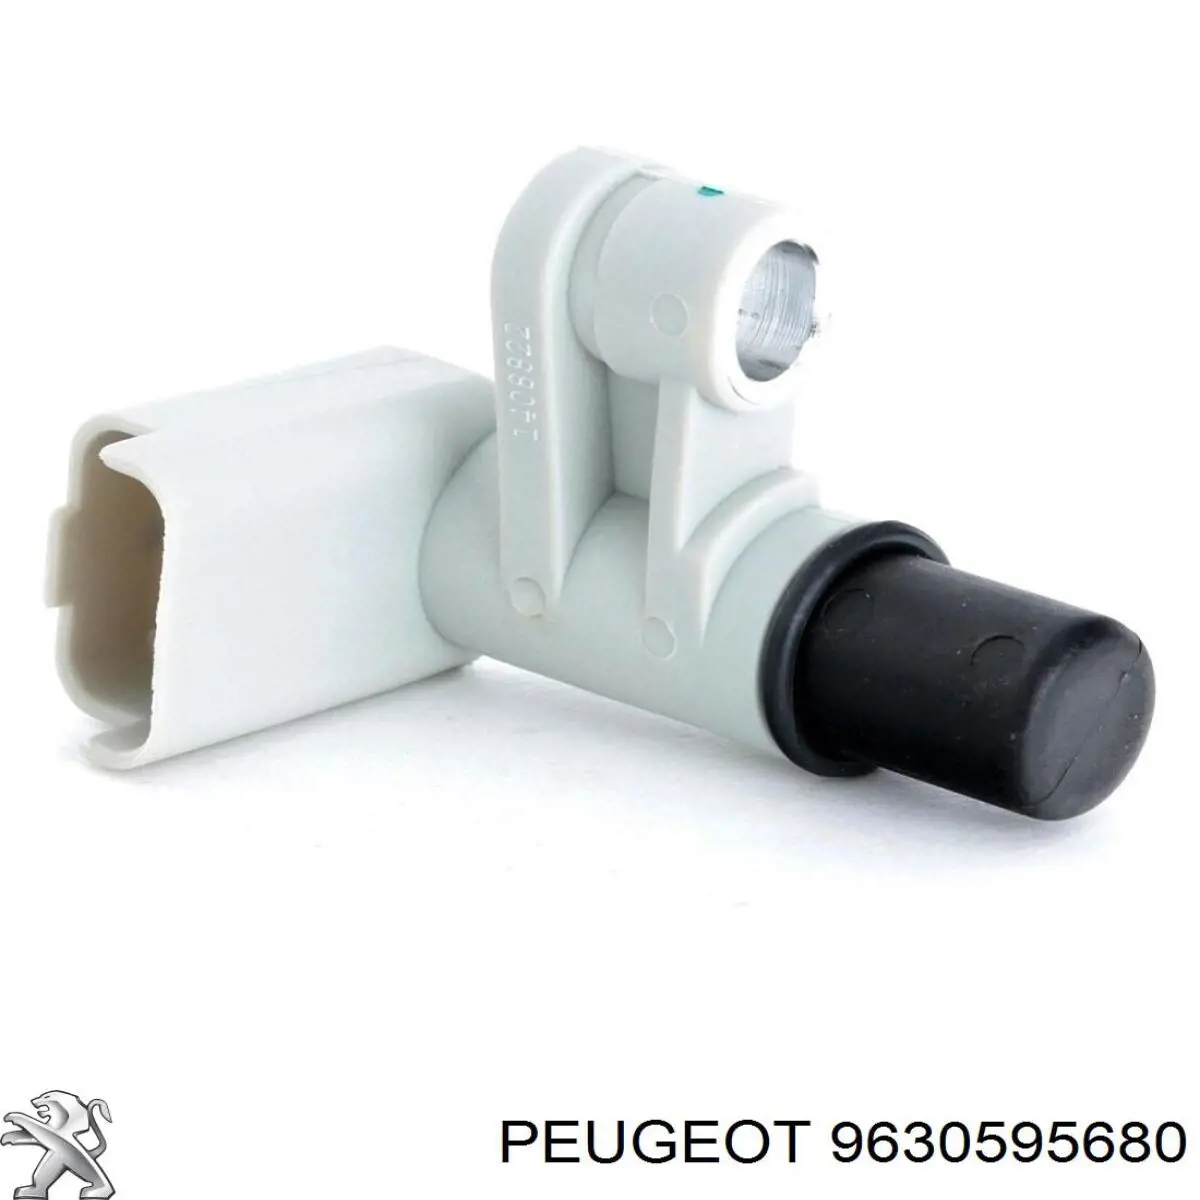 9630595680 Peugeot/Citroen sensor de arbol de levas